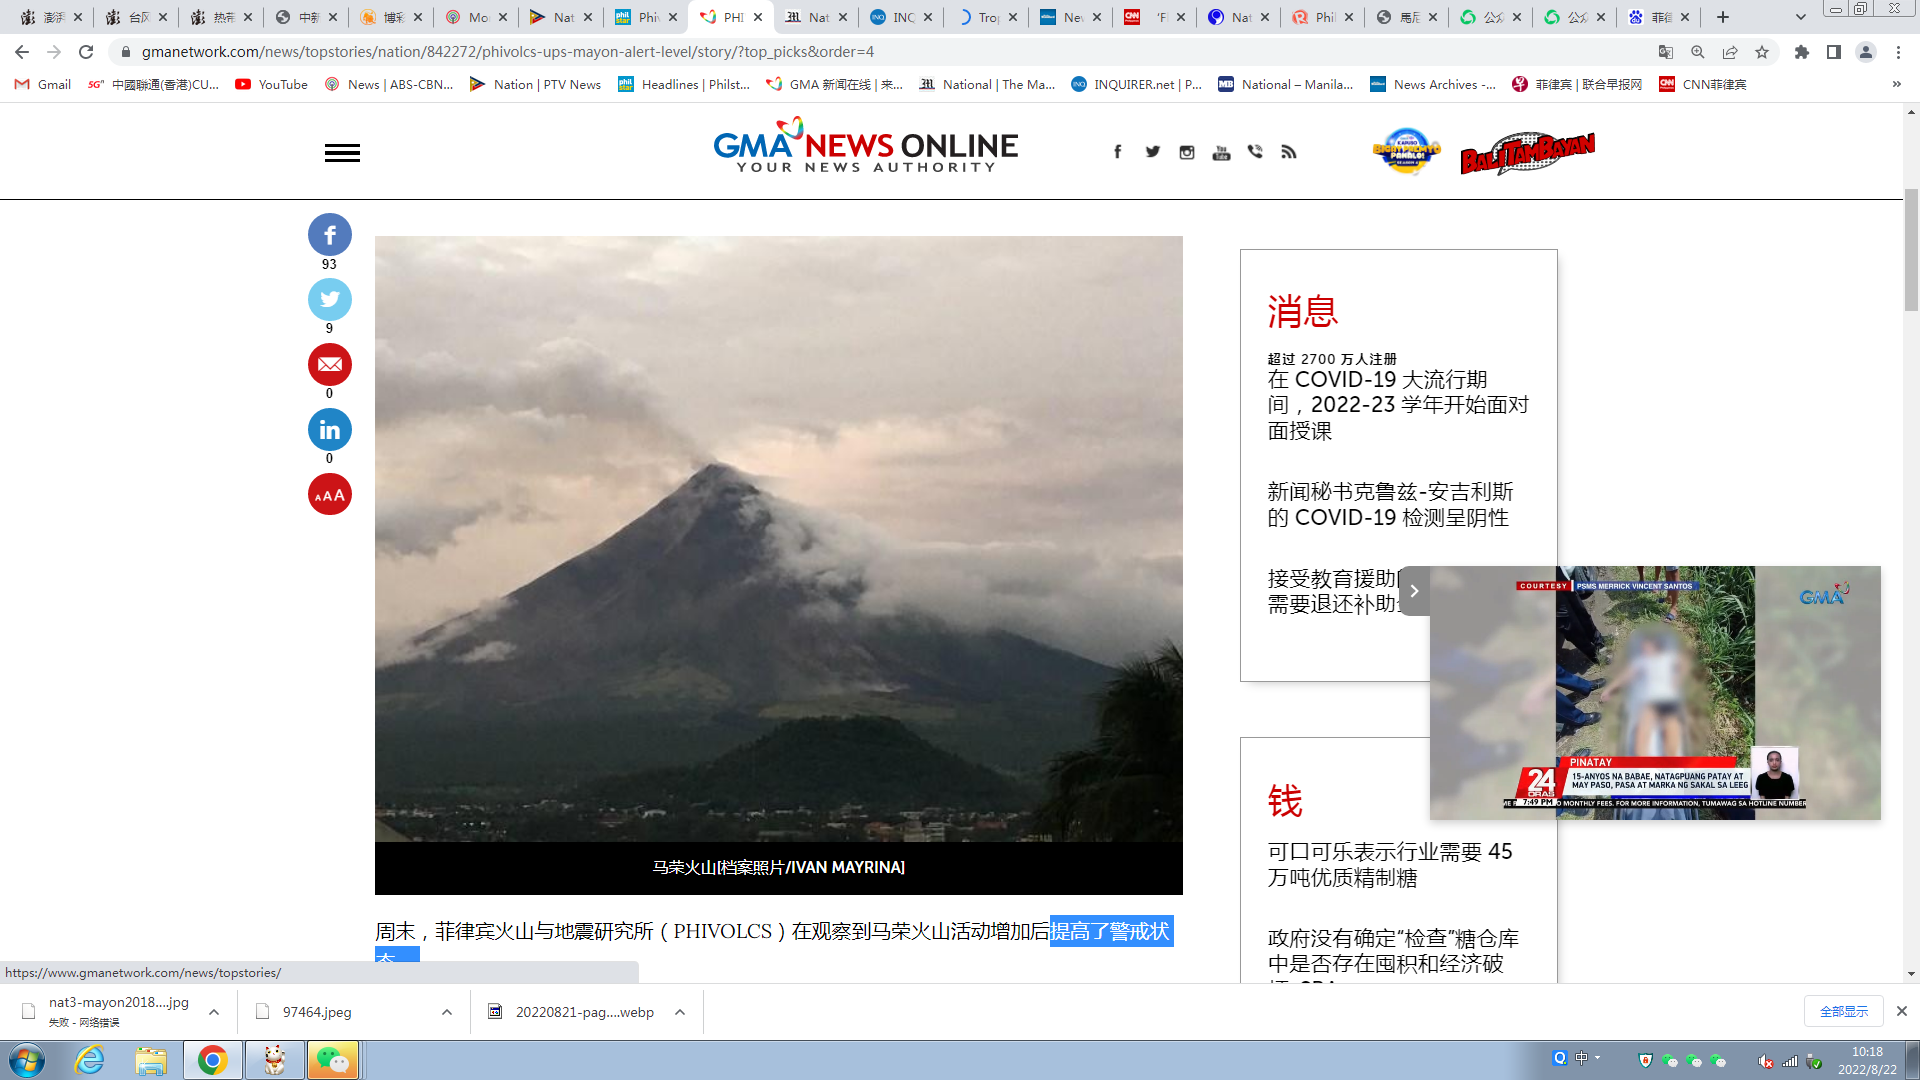 马荣火山出现喷发迹象